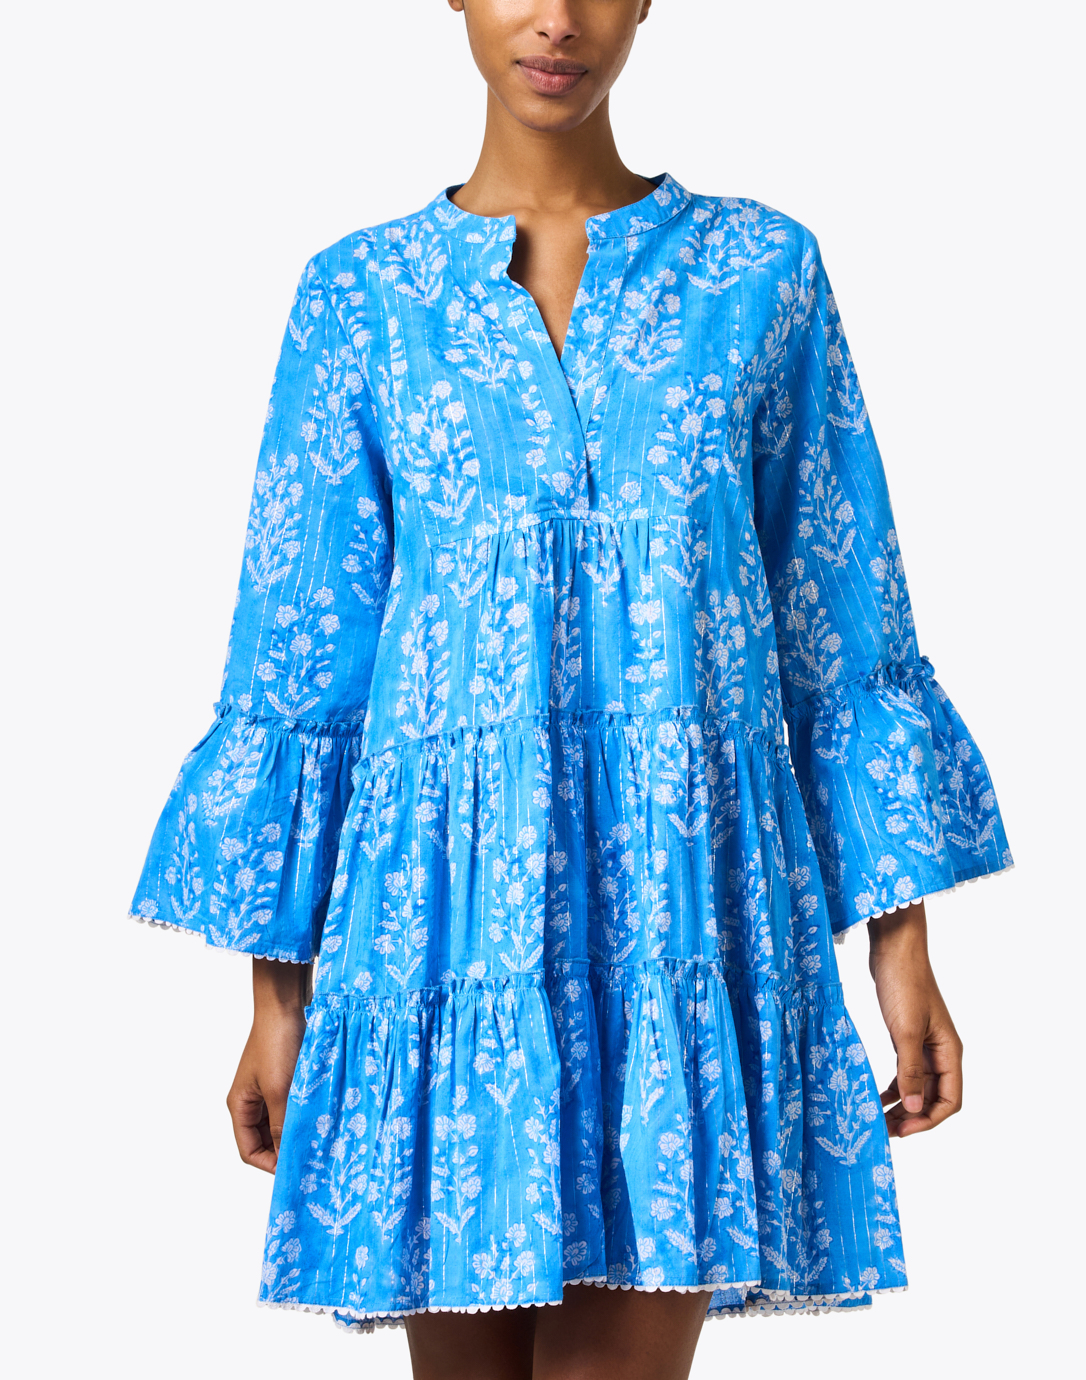 Blue Floral Print Cotton Dress | Juliet Dunn